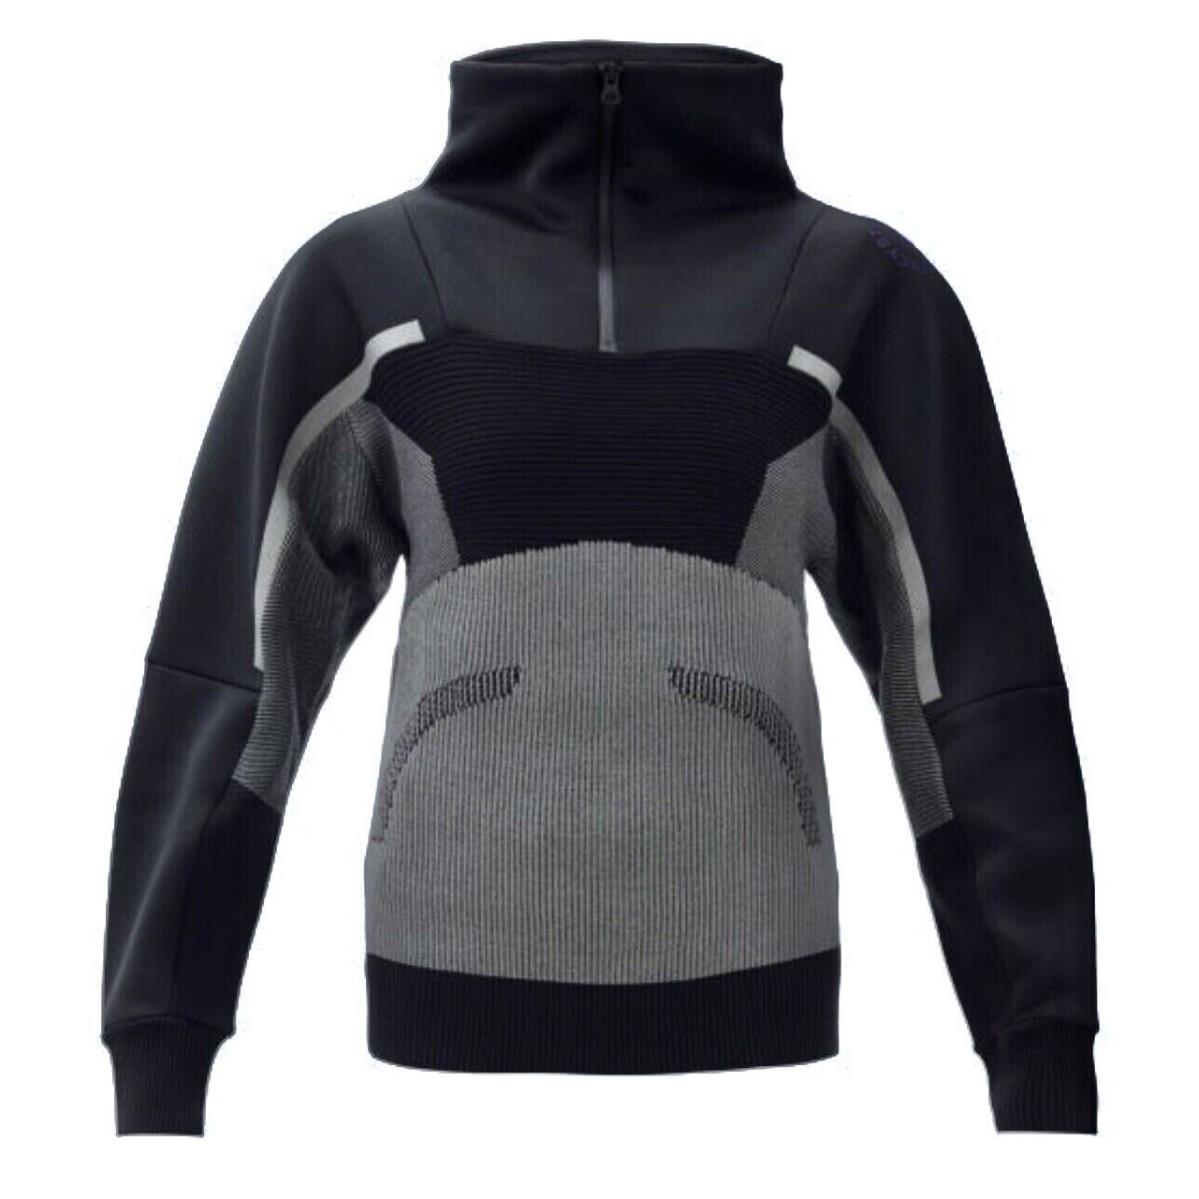 Adidas x Stella Mccartney Urban Extreme Knit Pullover Black/grey/purple FR9013